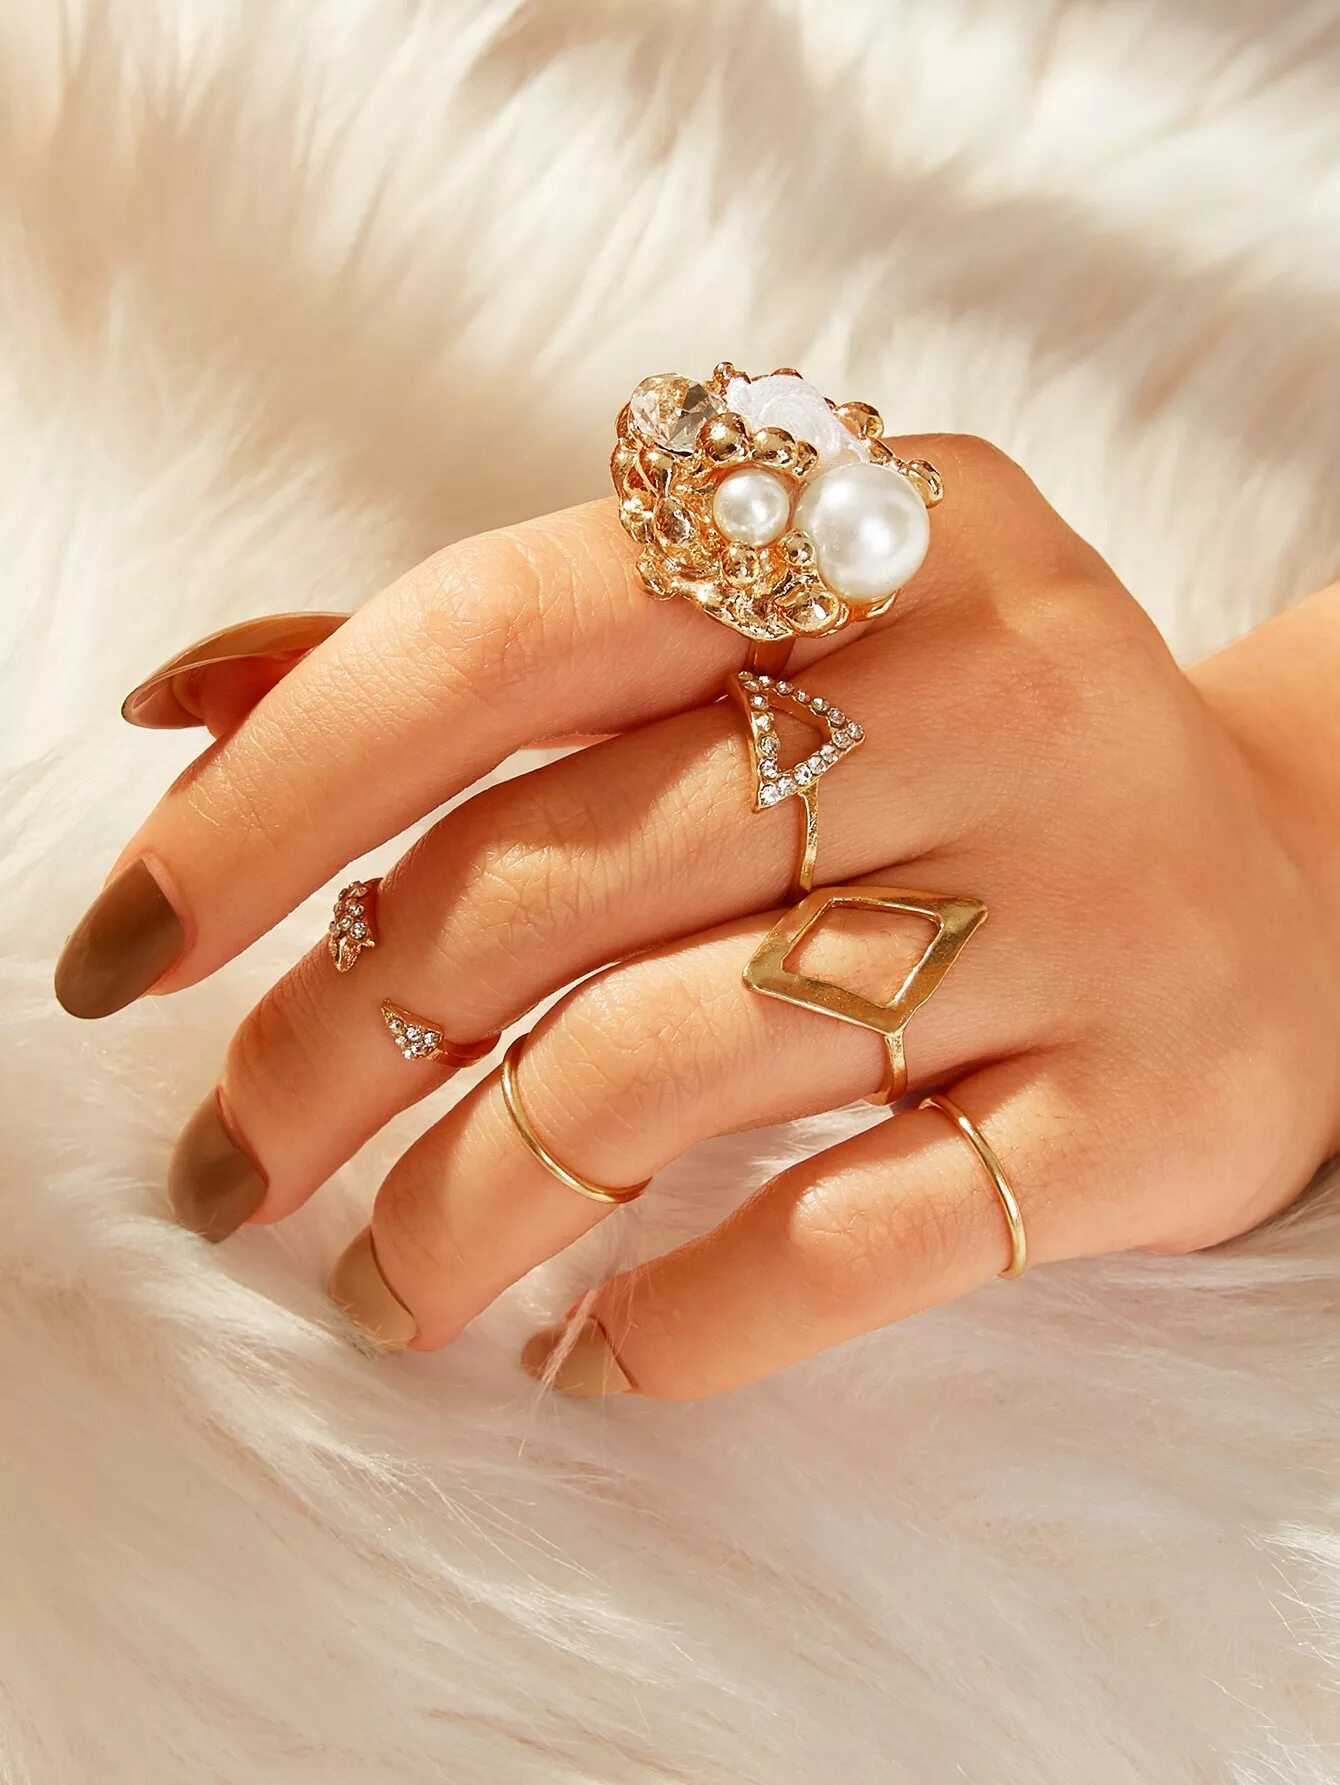 Надеты кольца золотые. Красивые кольца. Стильные золотые кольца. Кольцо женское. Модные золотые кольца.